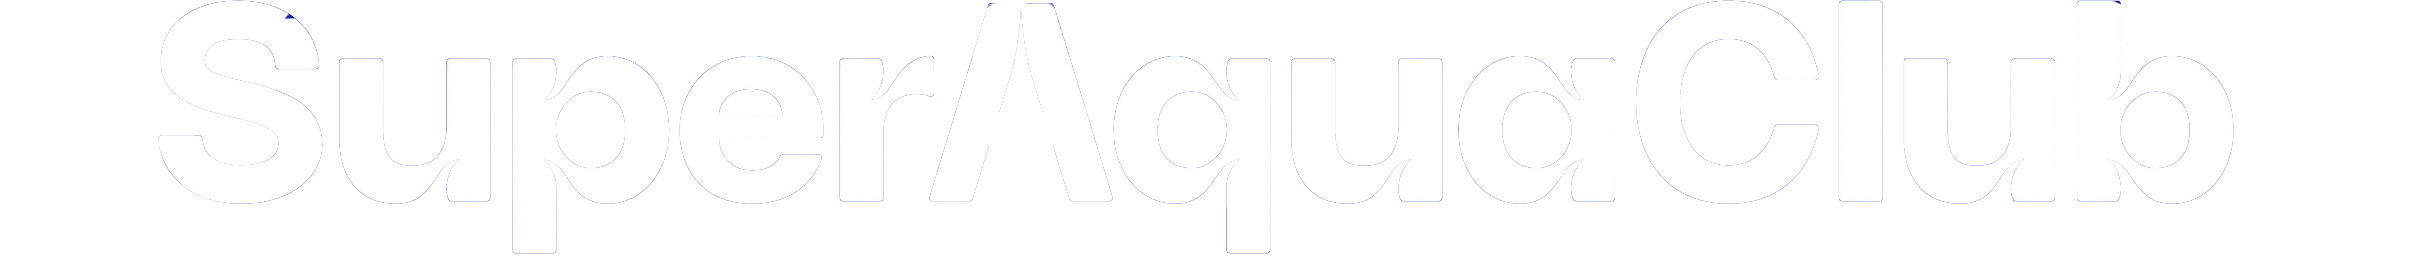 white logo of superaquaclub